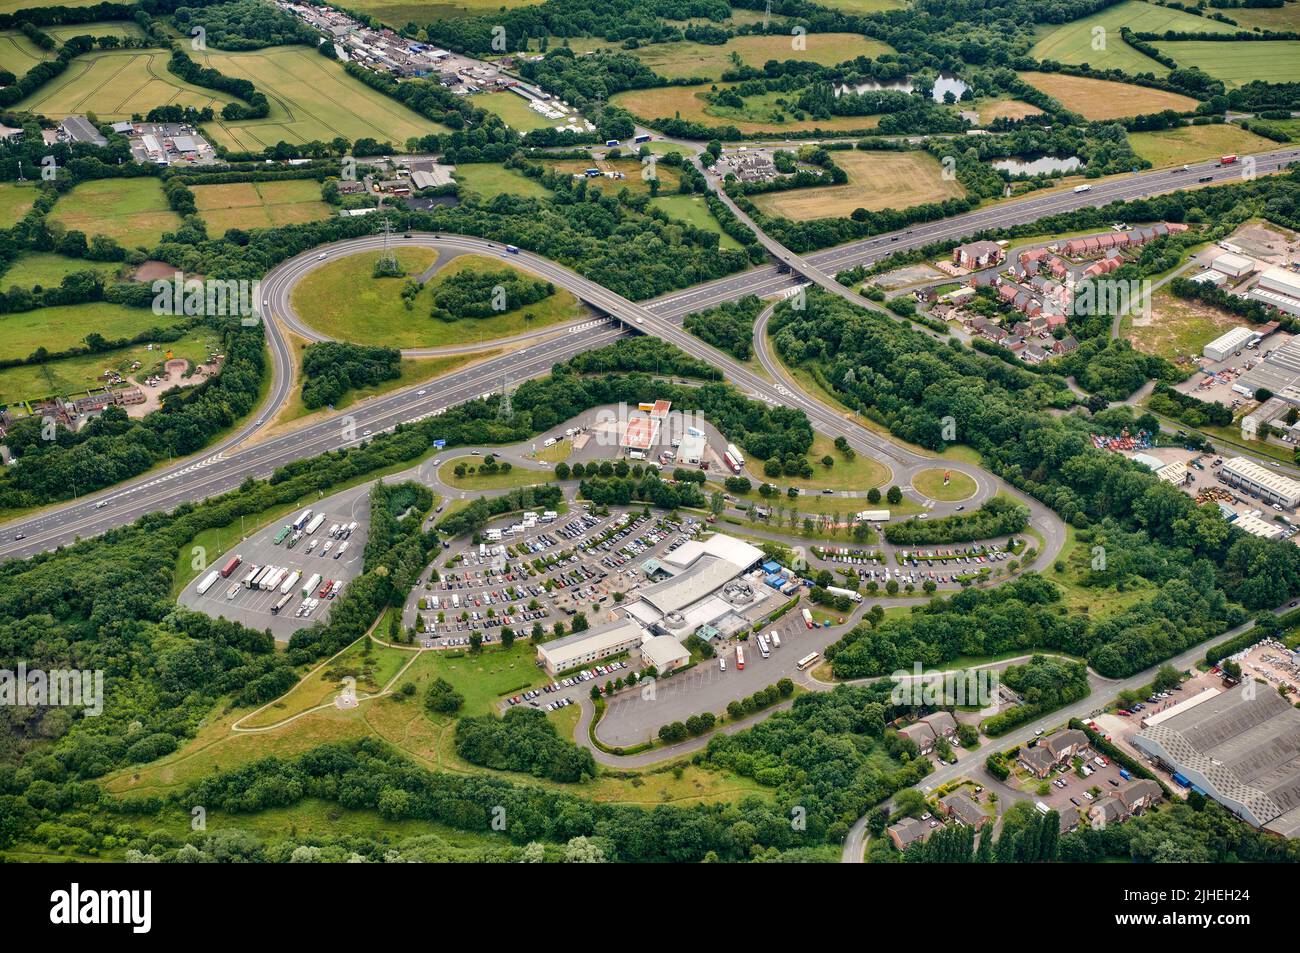 Une vue aérienne des services de Norton Canes sur l'autoroute à péage M6, près de Cannock, West Midlands, UK, Shropshire collines au loin Banque D'Images